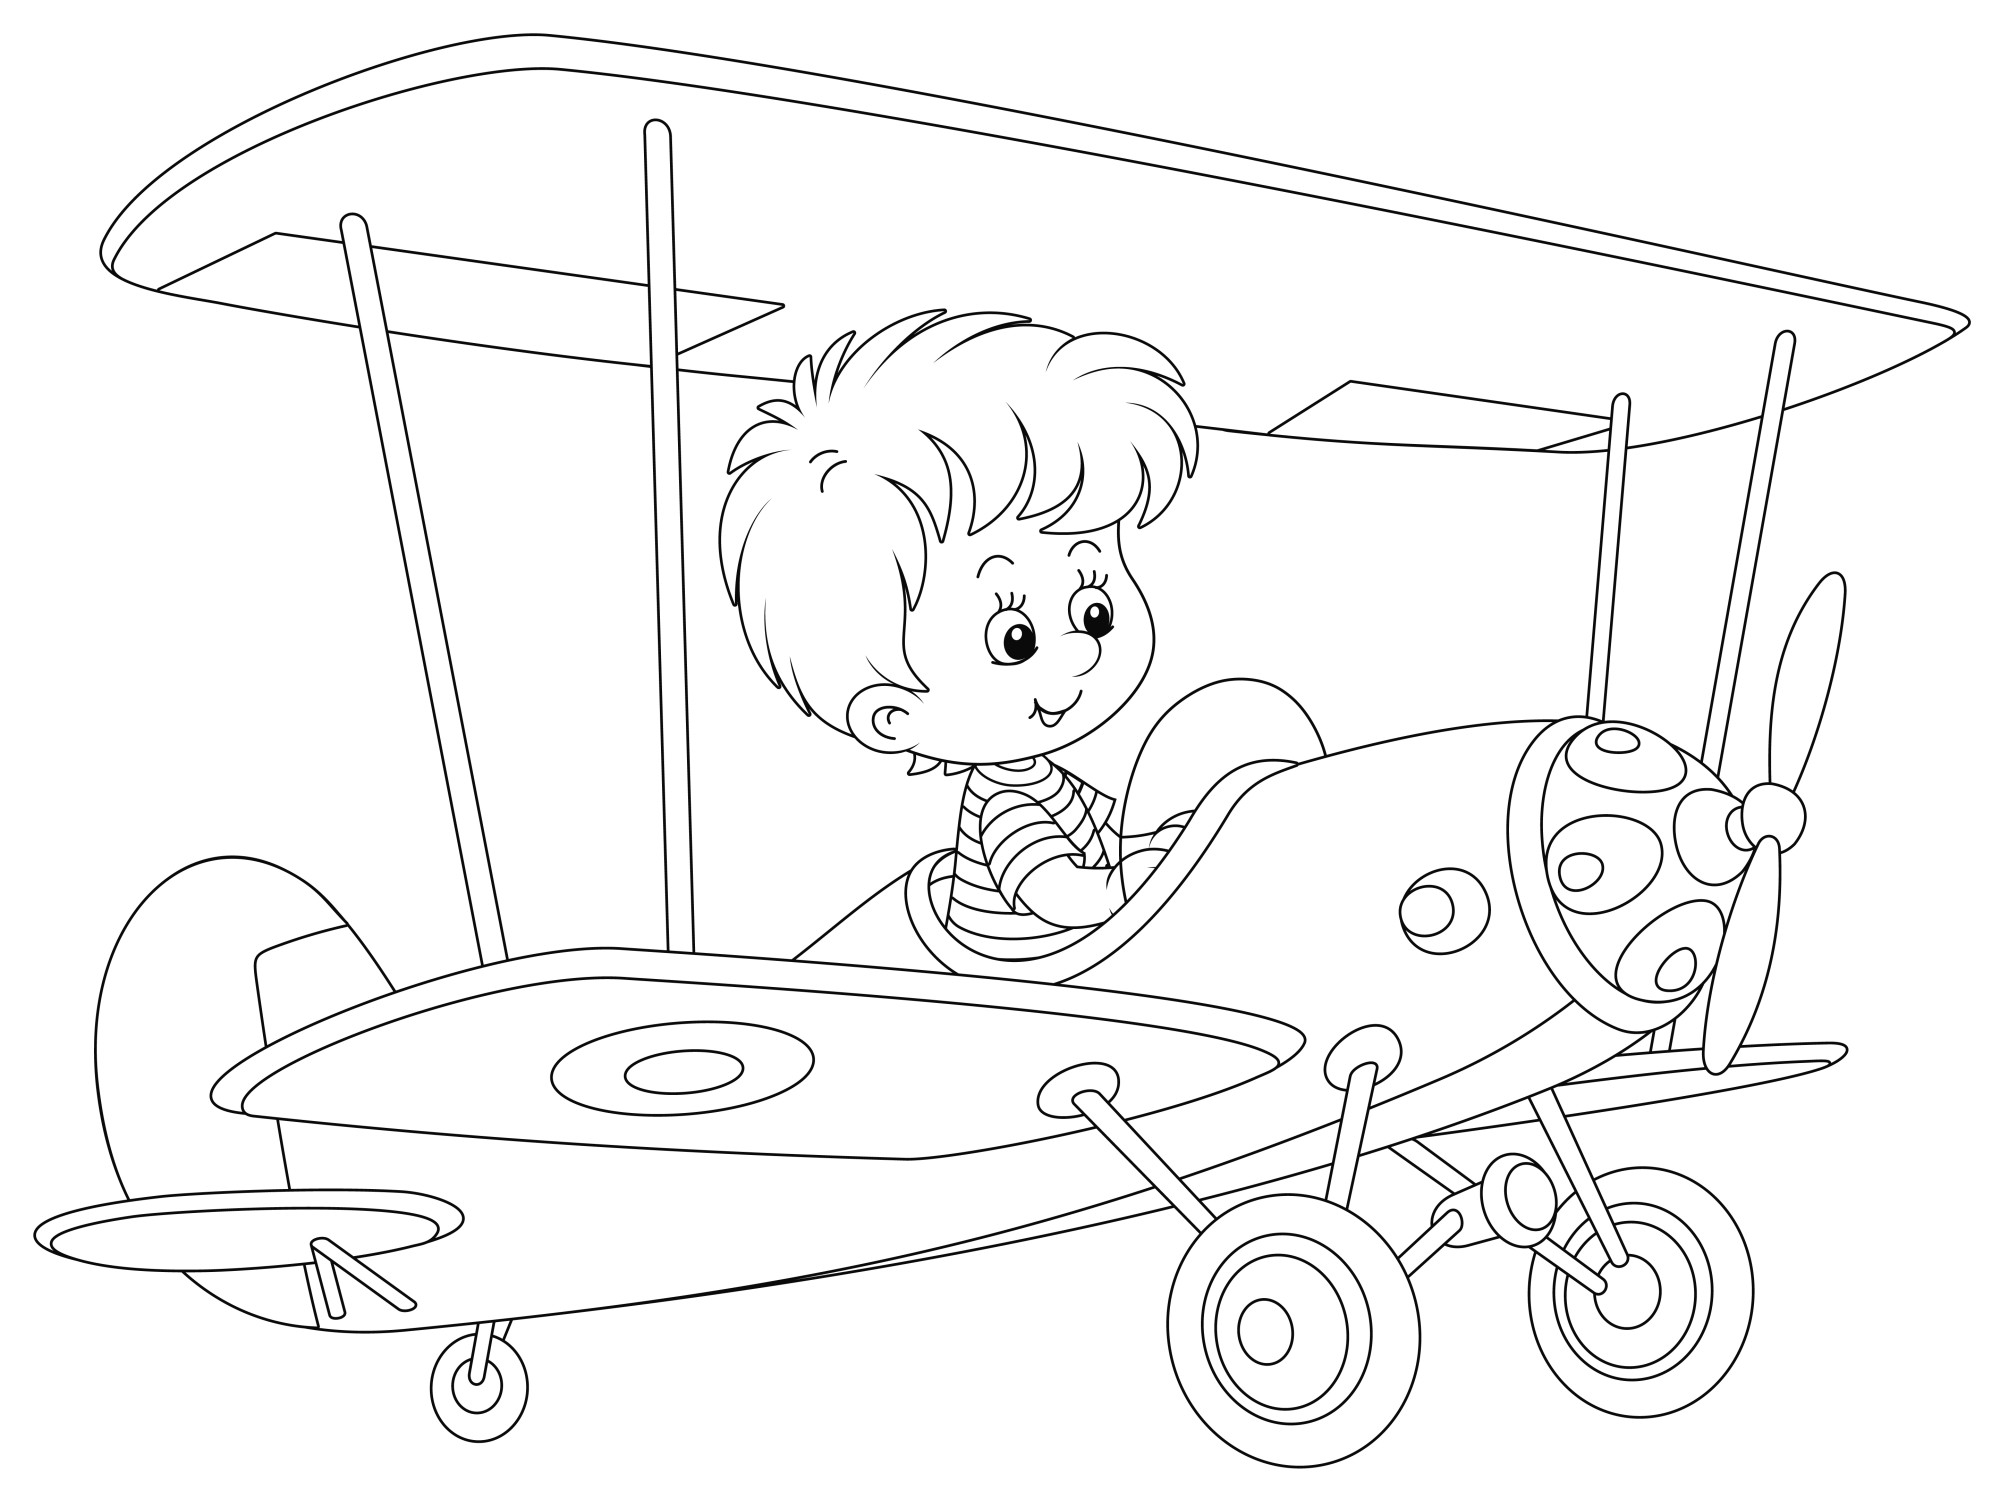 Раскраска для детей: игрушечный самолетик с мальчиком на борту